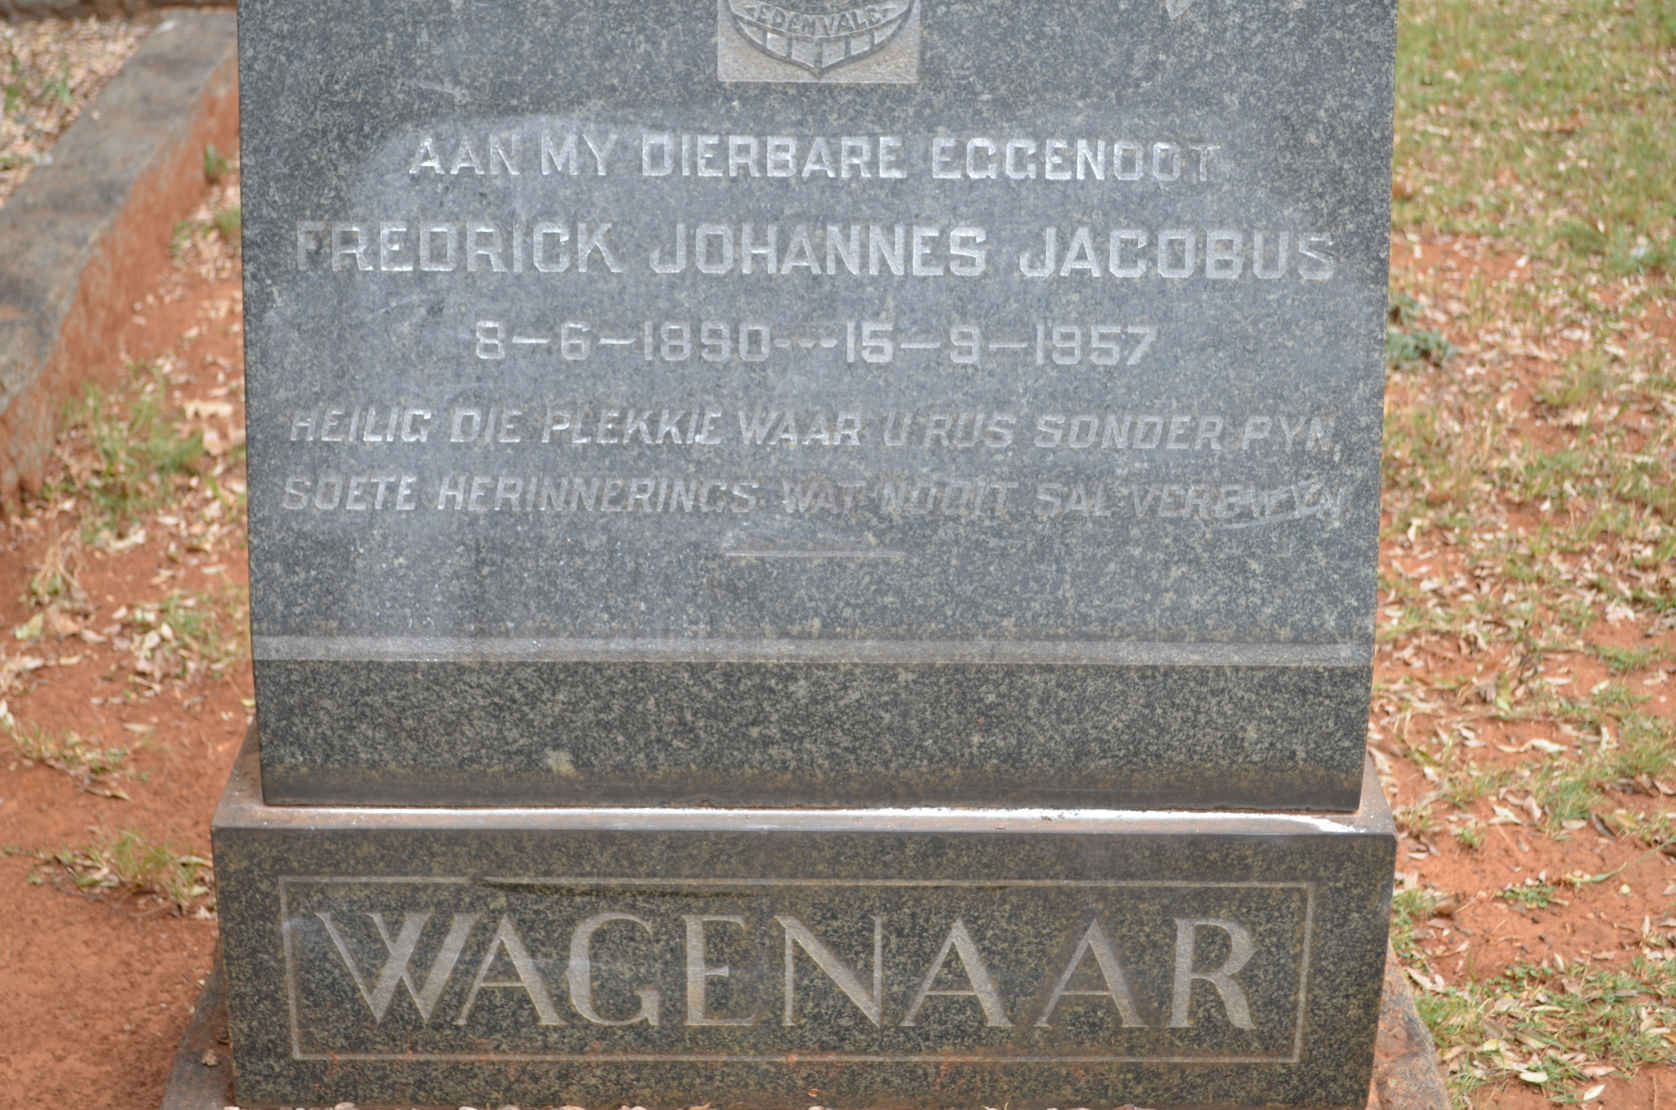 WAGENAAR Fredrick Johannes Jacobus 1890-1957